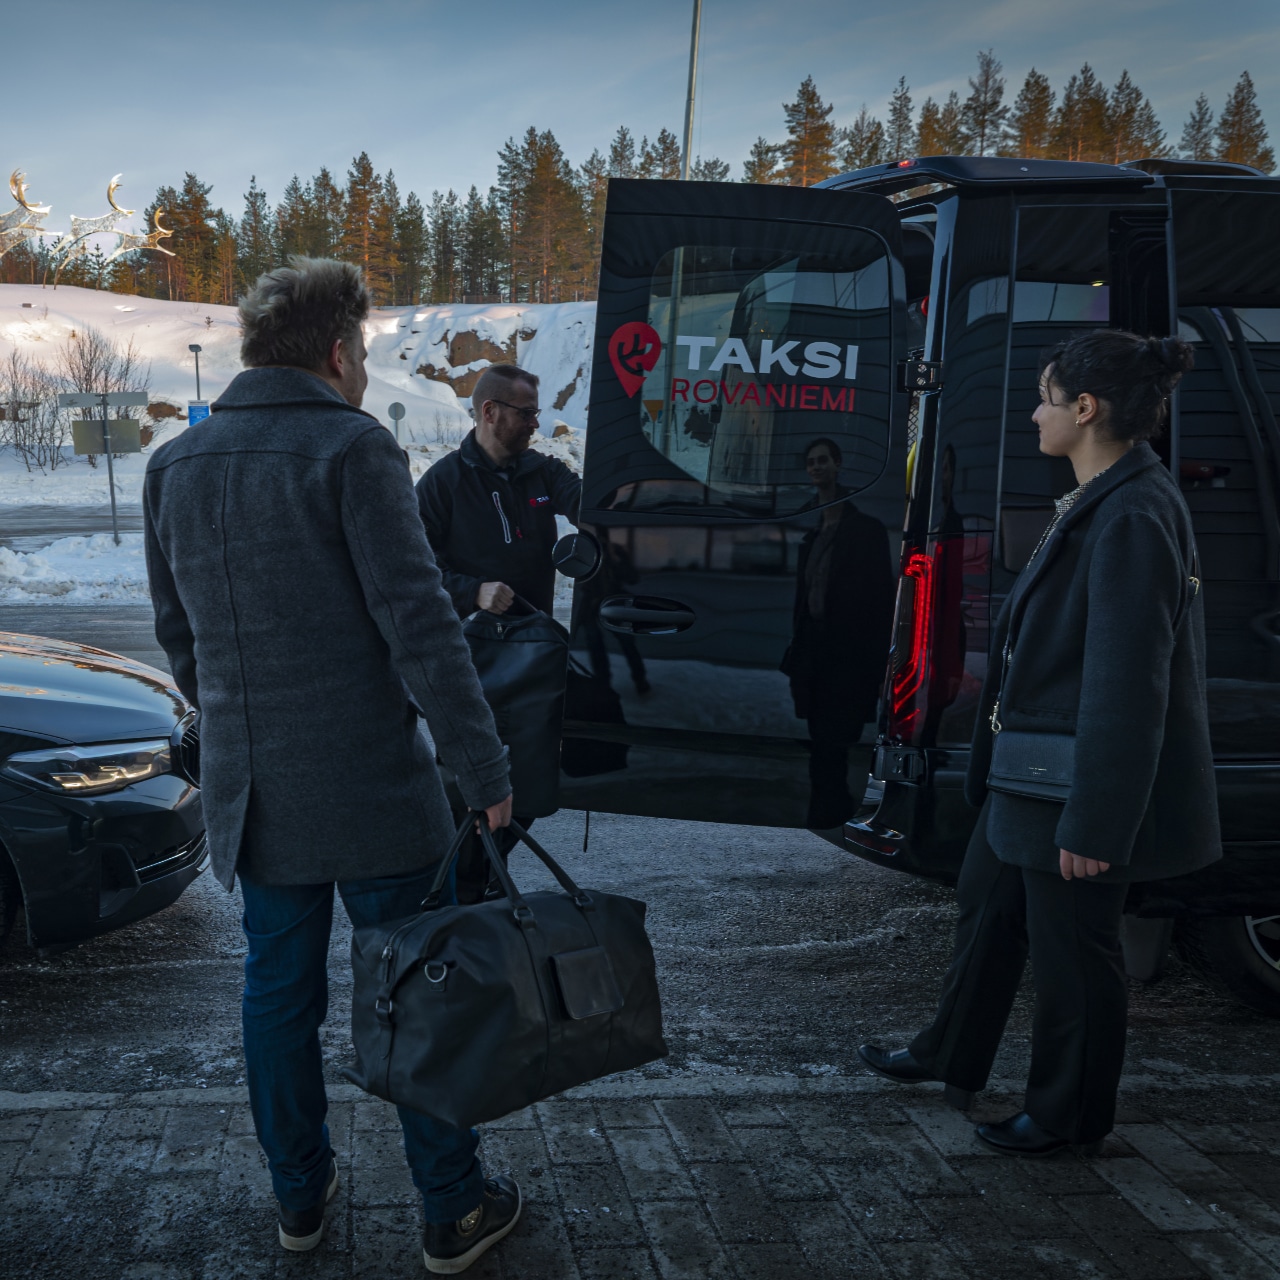 Matkatavarat tilataksiin • Taksi Rovaniemi